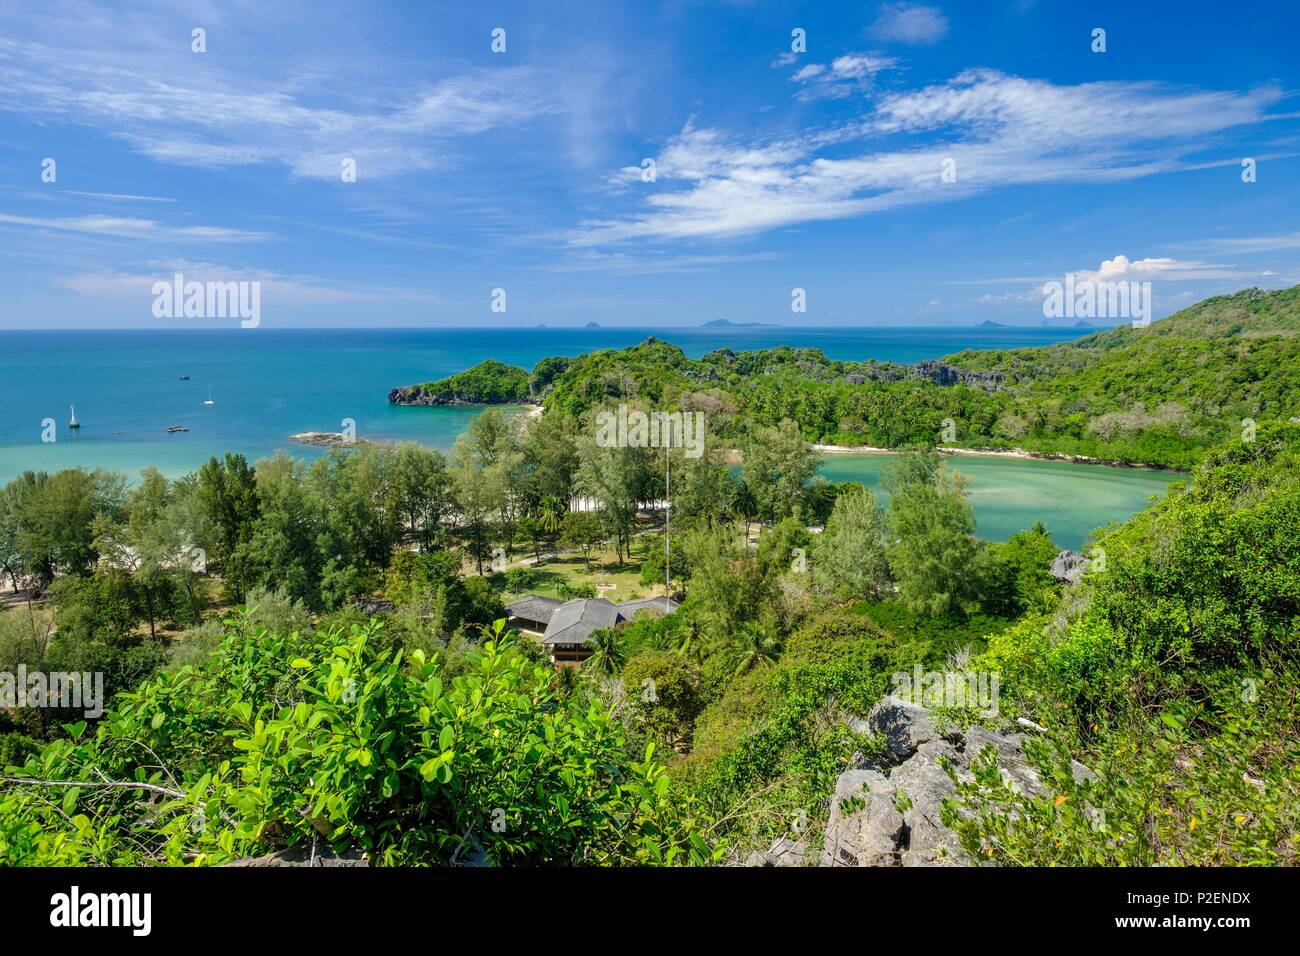 La Thaïlande, province de Phang Nga, Parc national marin de Tarutao, Ko Tarutao island, vue panoramique à partir de la TOE Boo (falaise ou à Bu) Banque D'Images